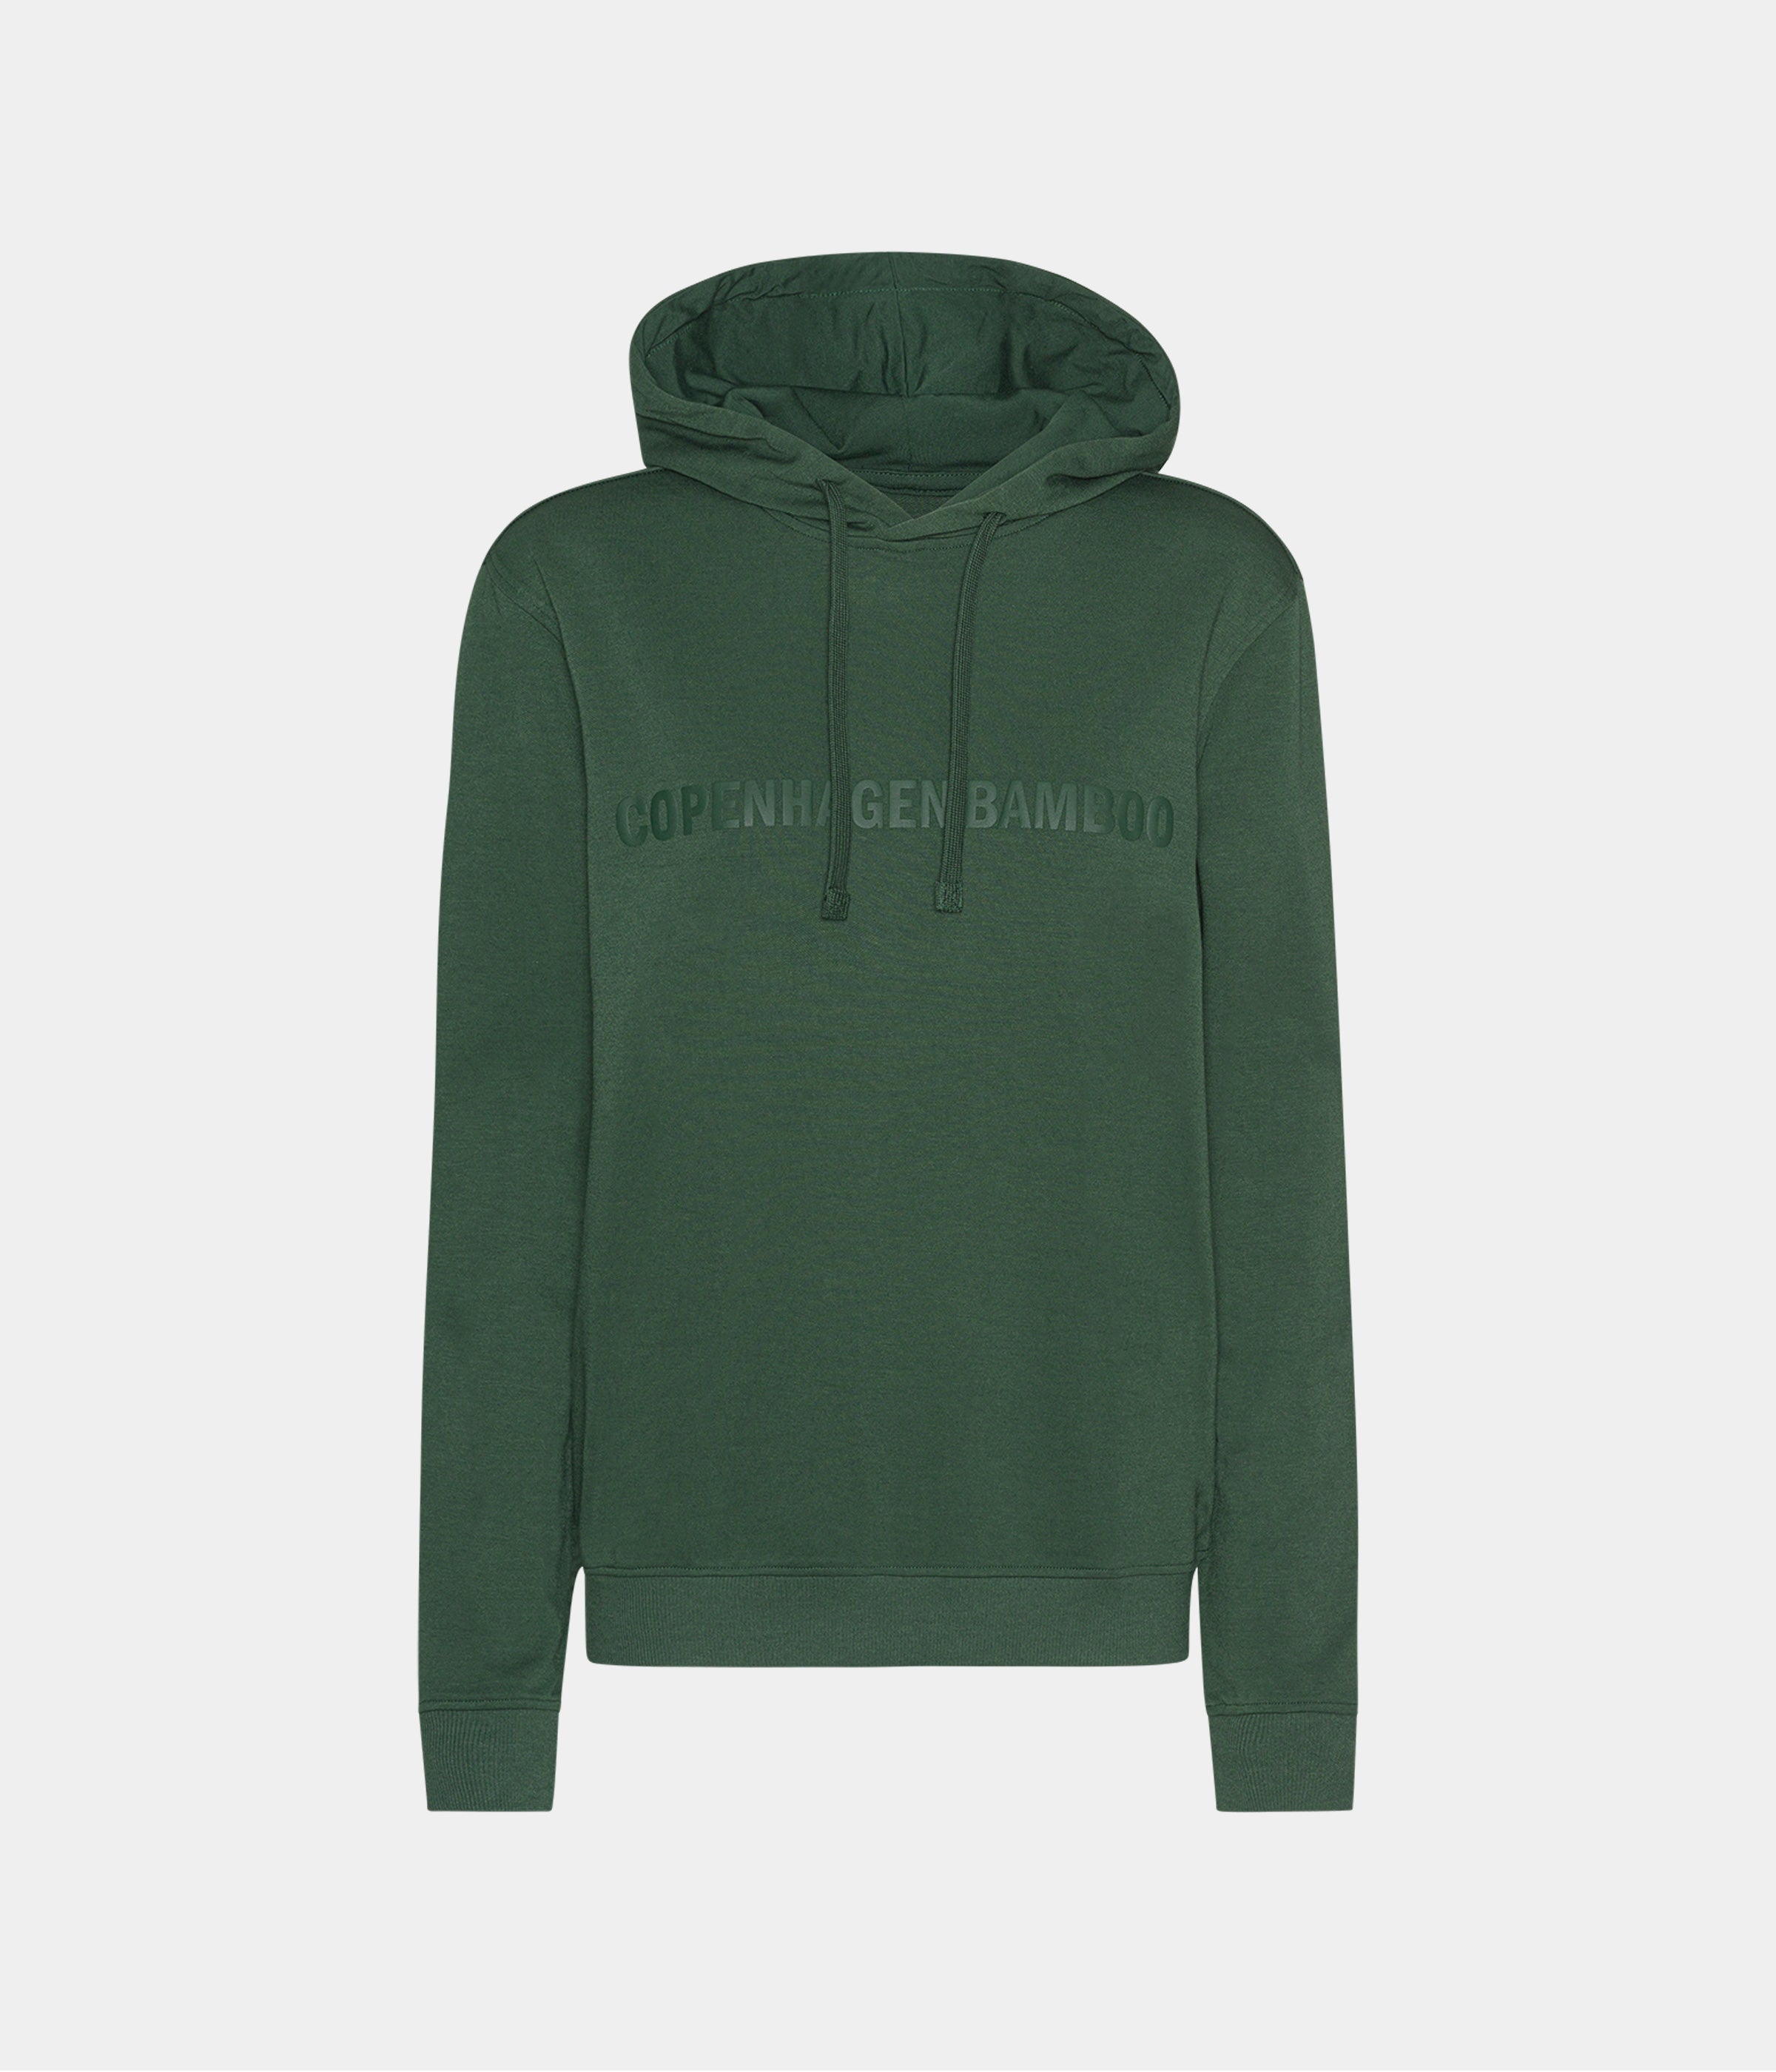 Se Grøn bambus hoodie til mænd med logo fra Copenhagen Bamboo, XL hos Copenhagen Bamboo